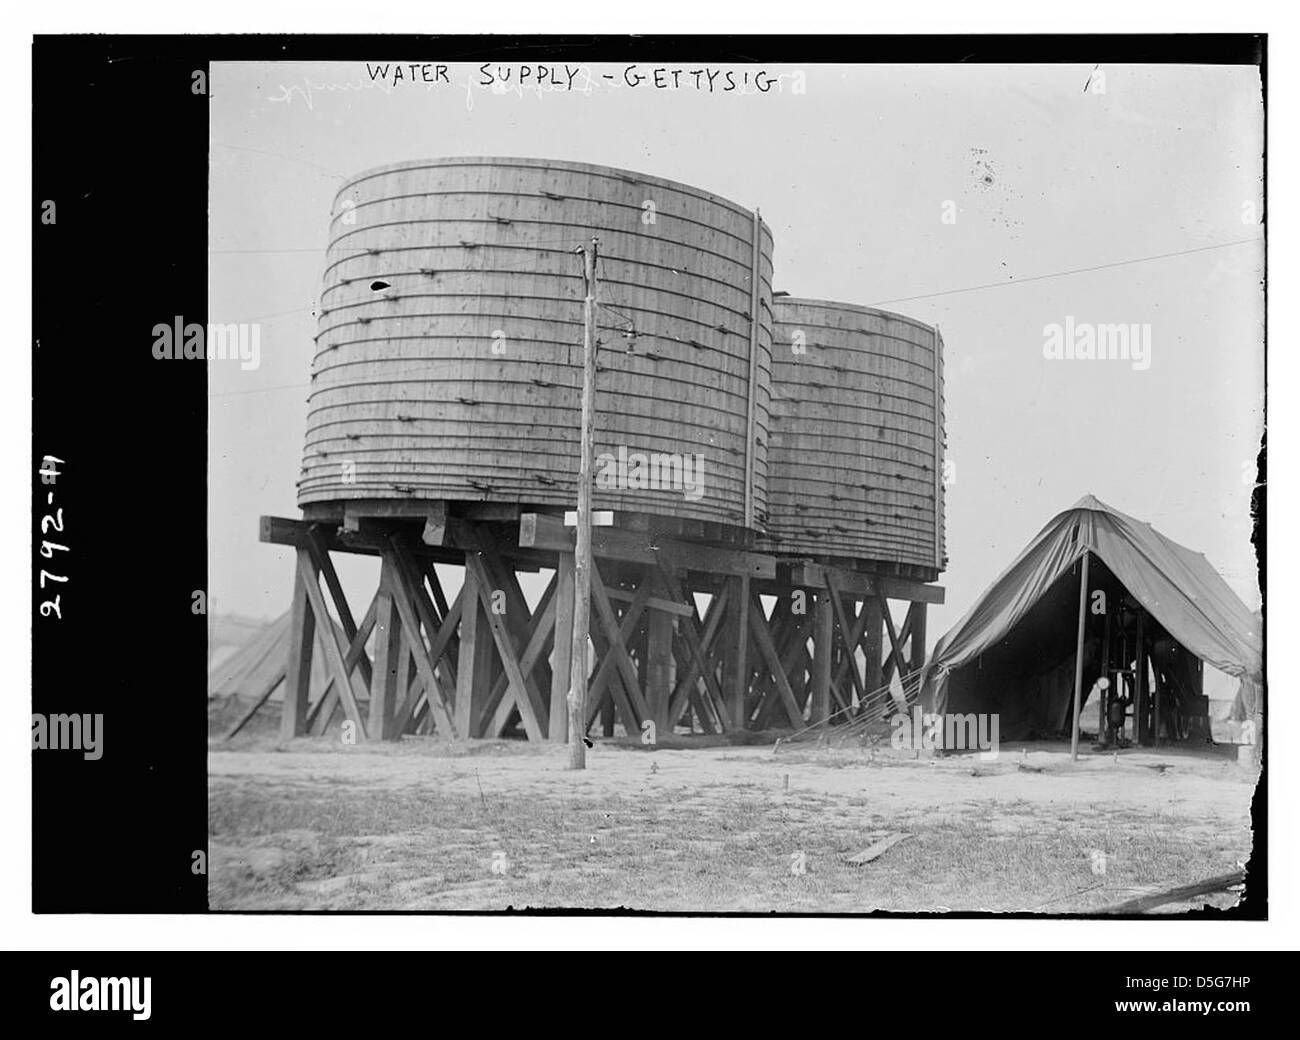 Water Supply - Gettysburg (LOC) Stock Photo